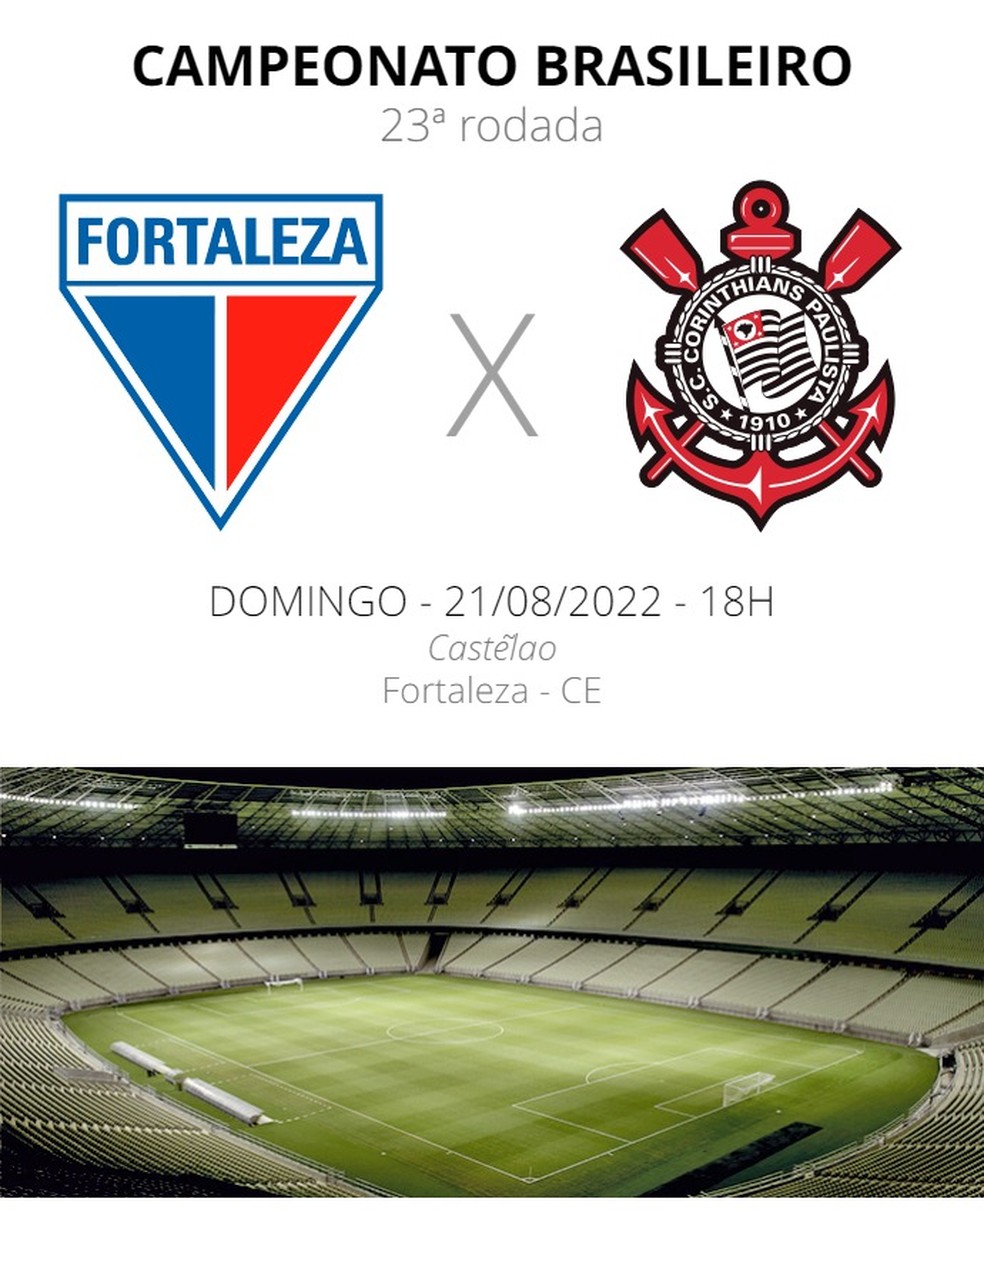 Quando vai ser o jogo do Fortaleza e Corinthians?